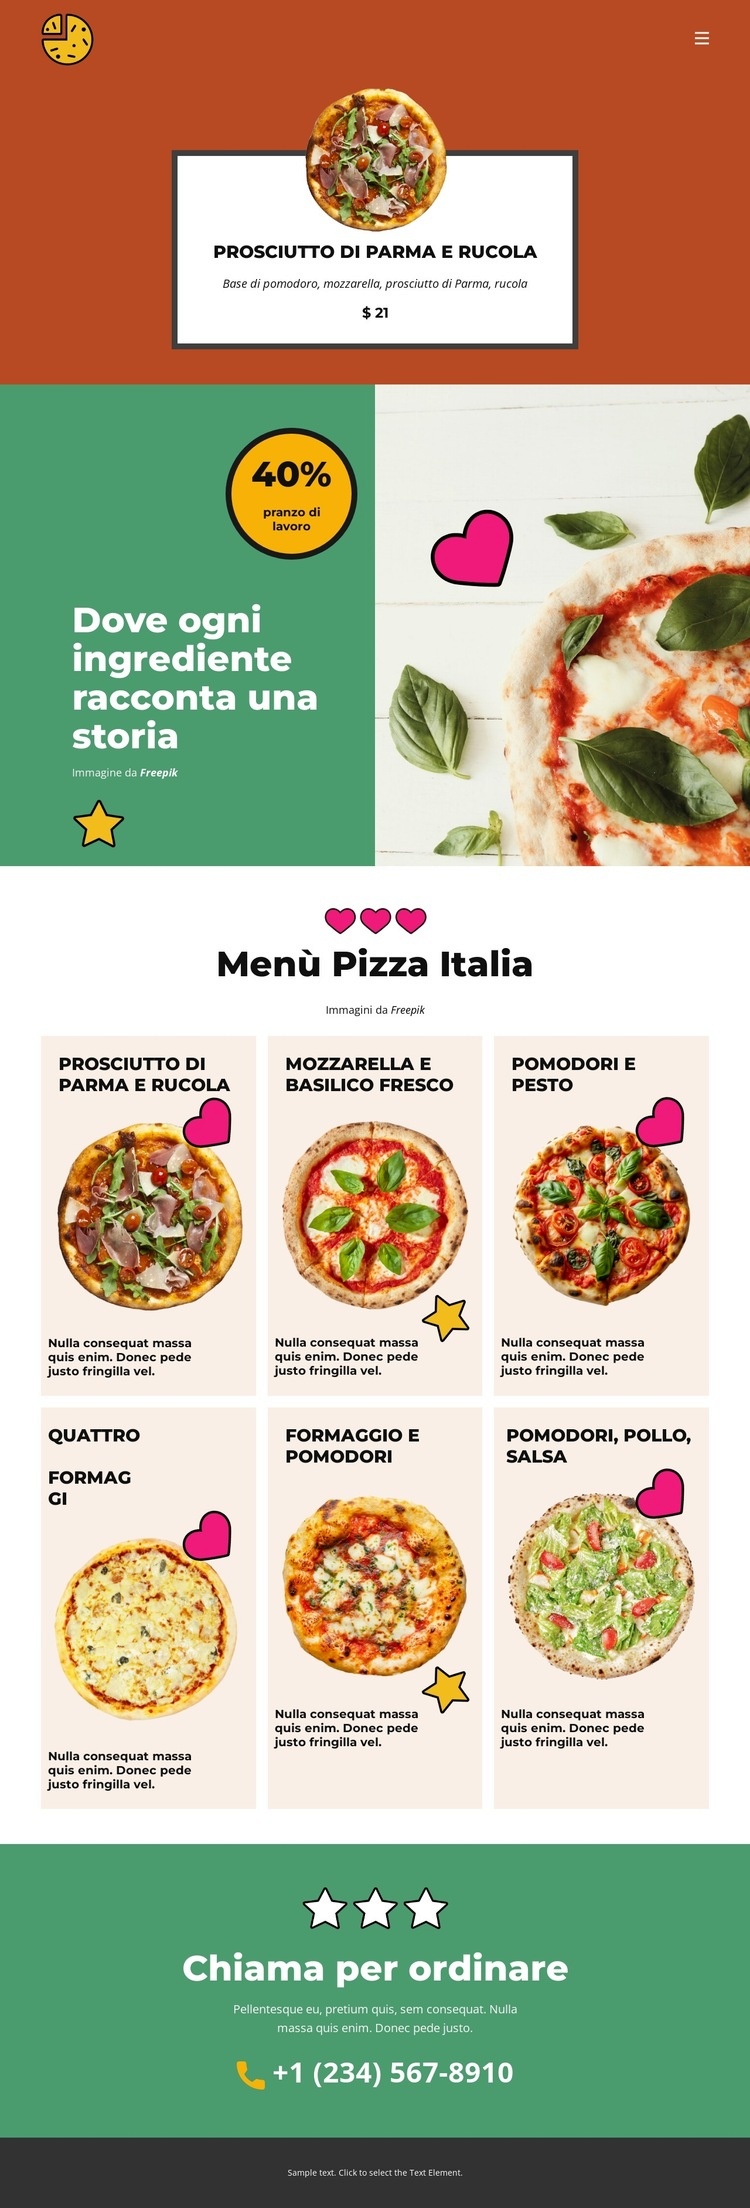 Fun Facts about Pizza Pagina di destinazione